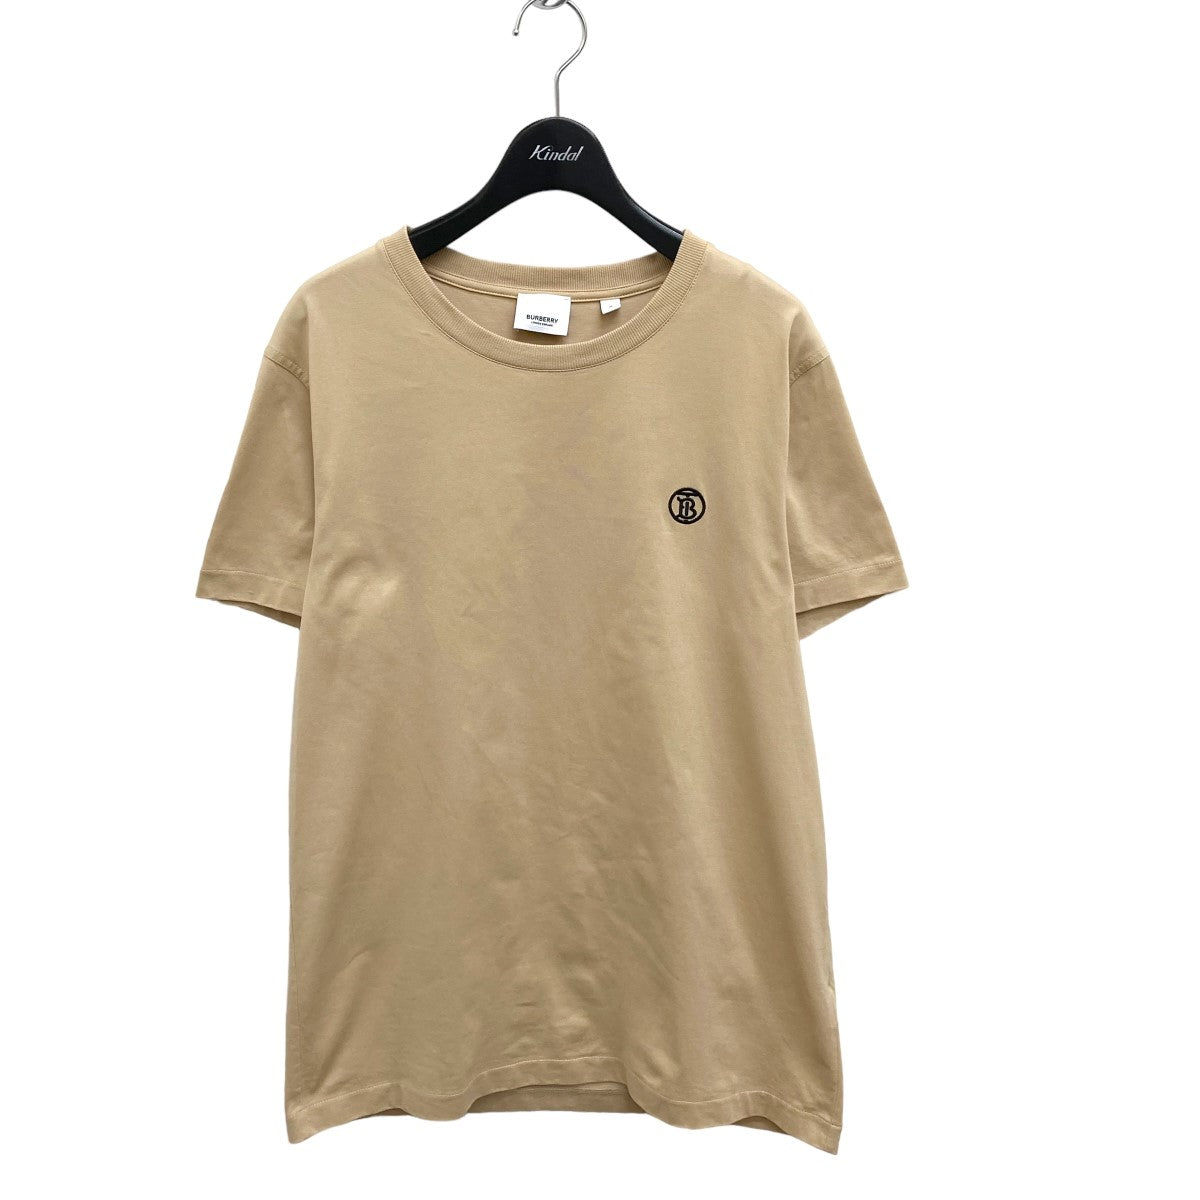 Burberry(バーバリー) TB刺繍半袖Tシャツ8053424 ベージュ サイズ:M メンズ Tシャツ・カットソー 中古・古着